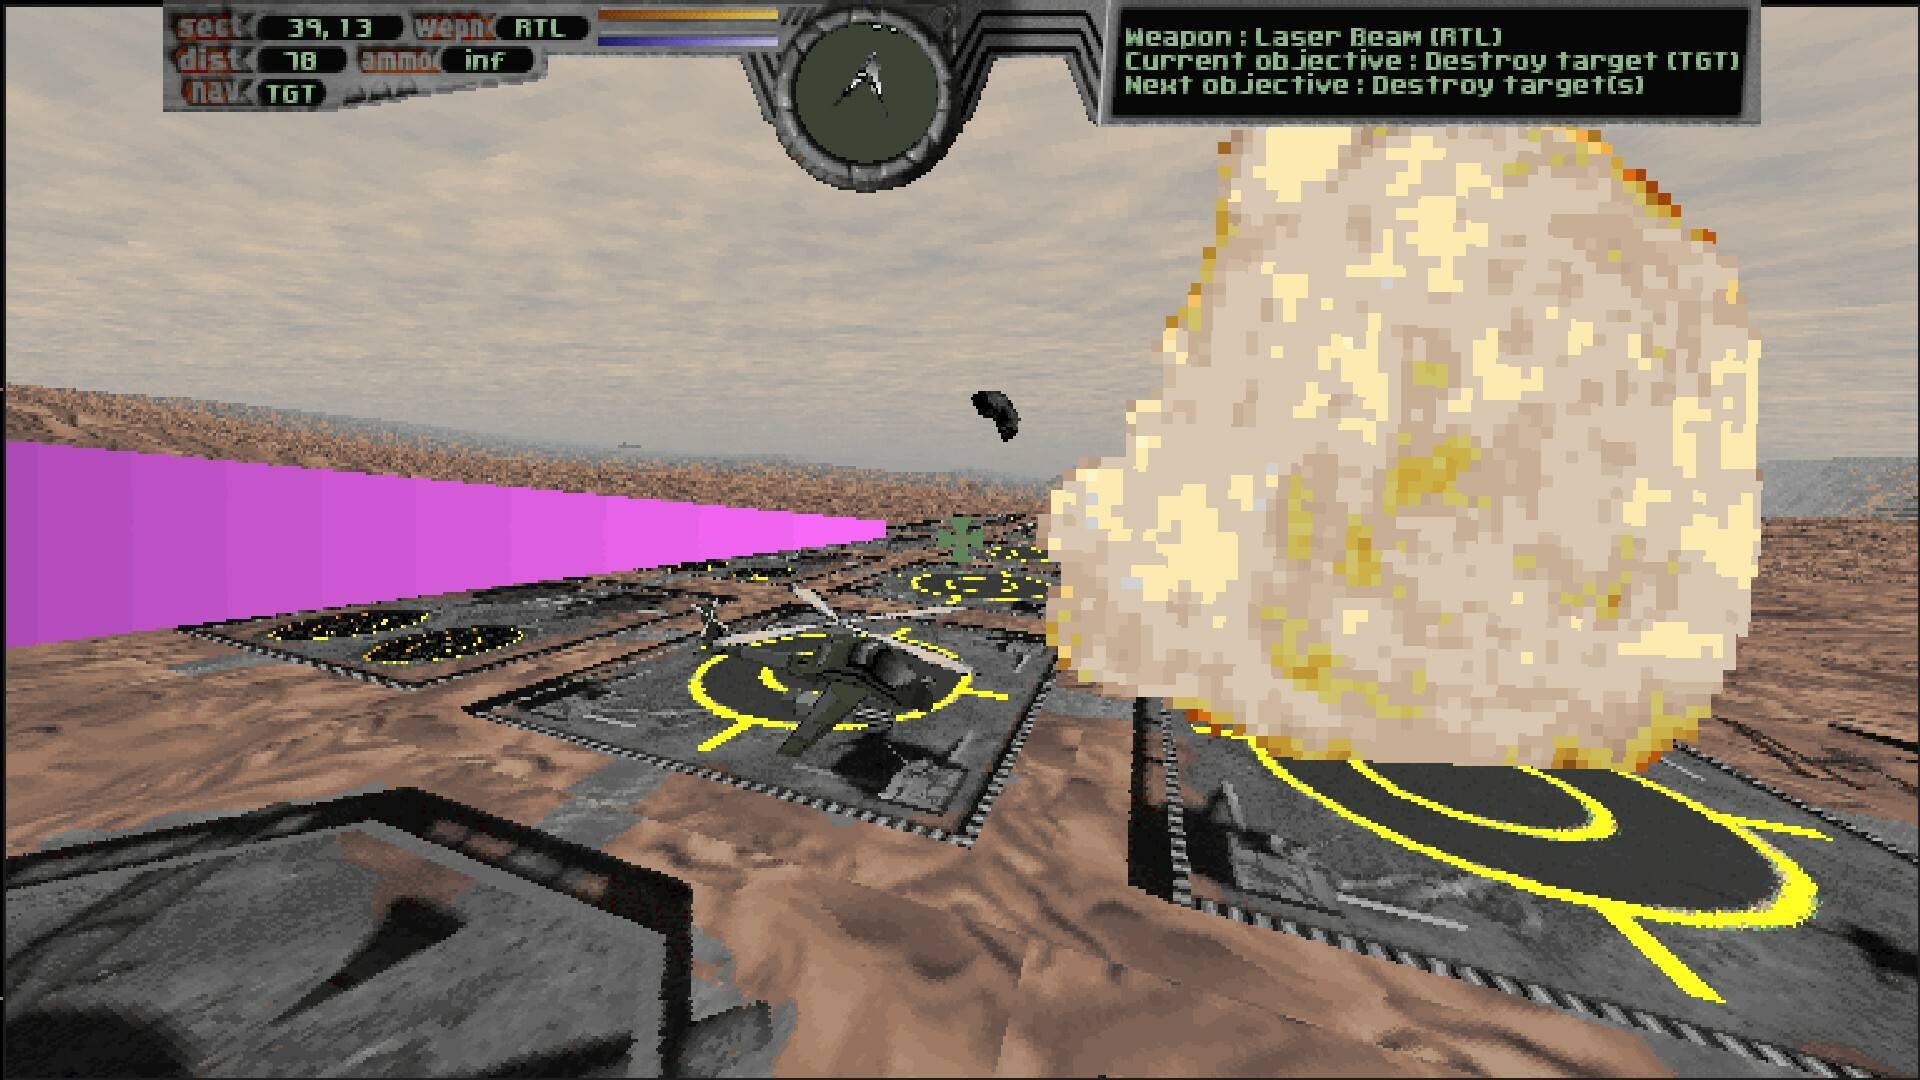 飞行模拟器游戏推荐苹果版:29年前的经典飞行模拟游戏《终极速度》即将推出增强版-第3张图片-太平洋在线下载